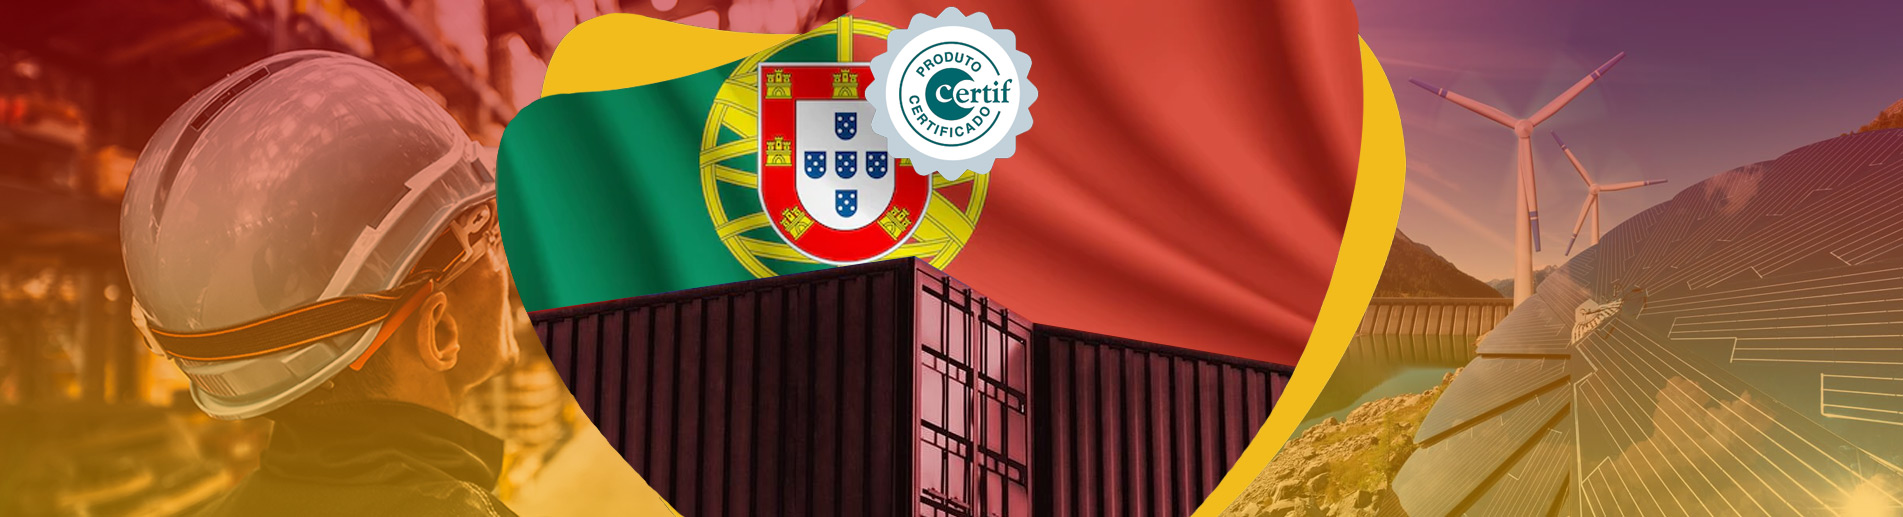 CERTIF Belgeleri Portekiz Sertifikasyon